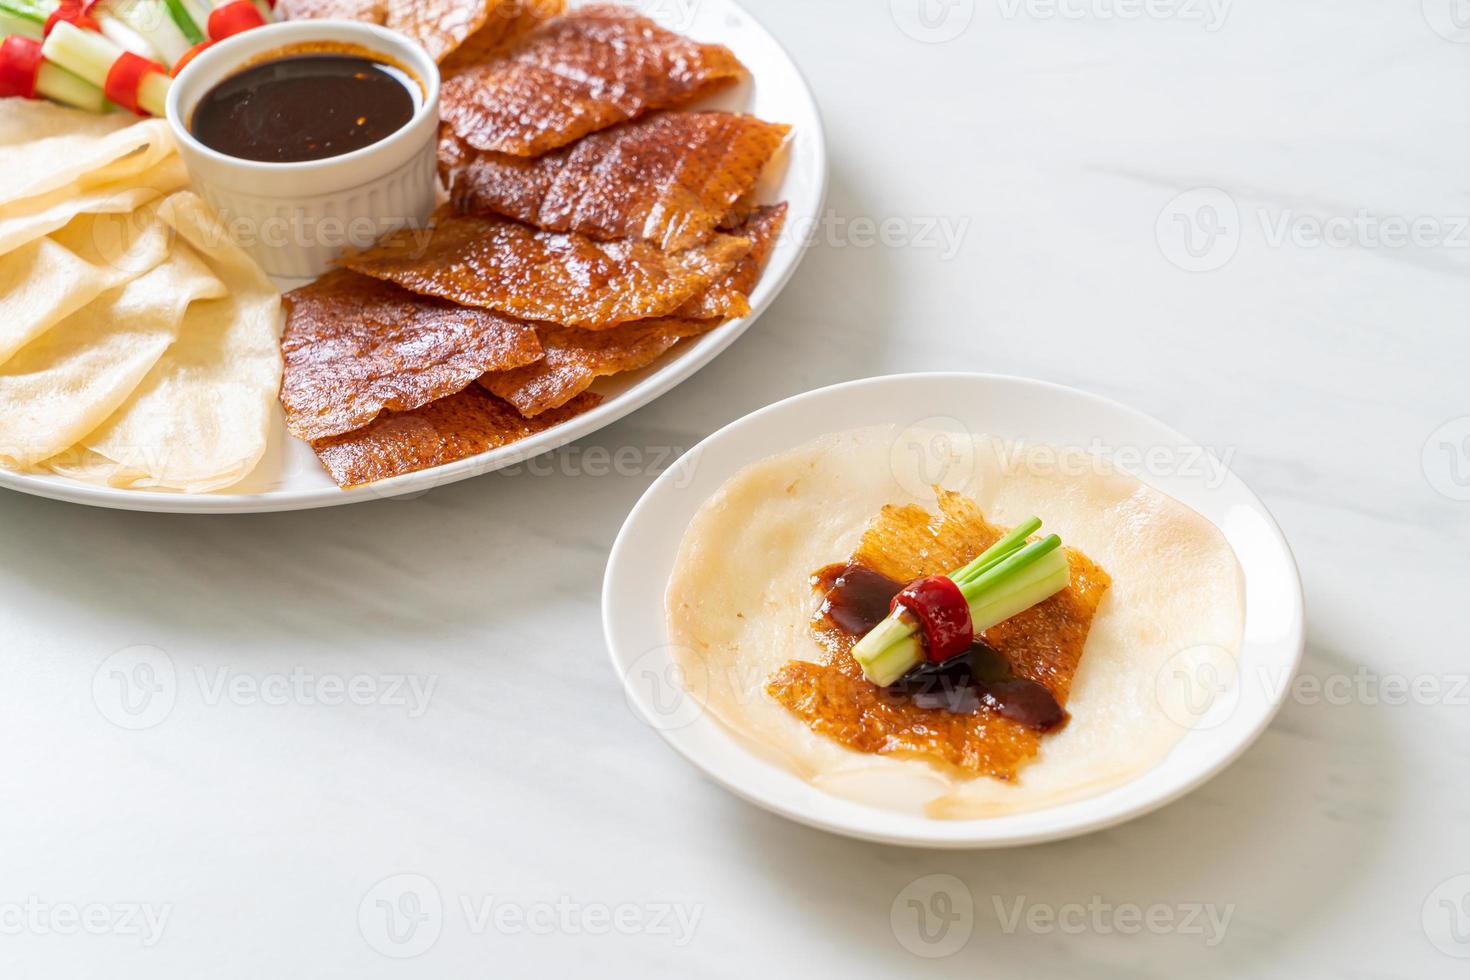 canard laqué - cuisine chinoise photo